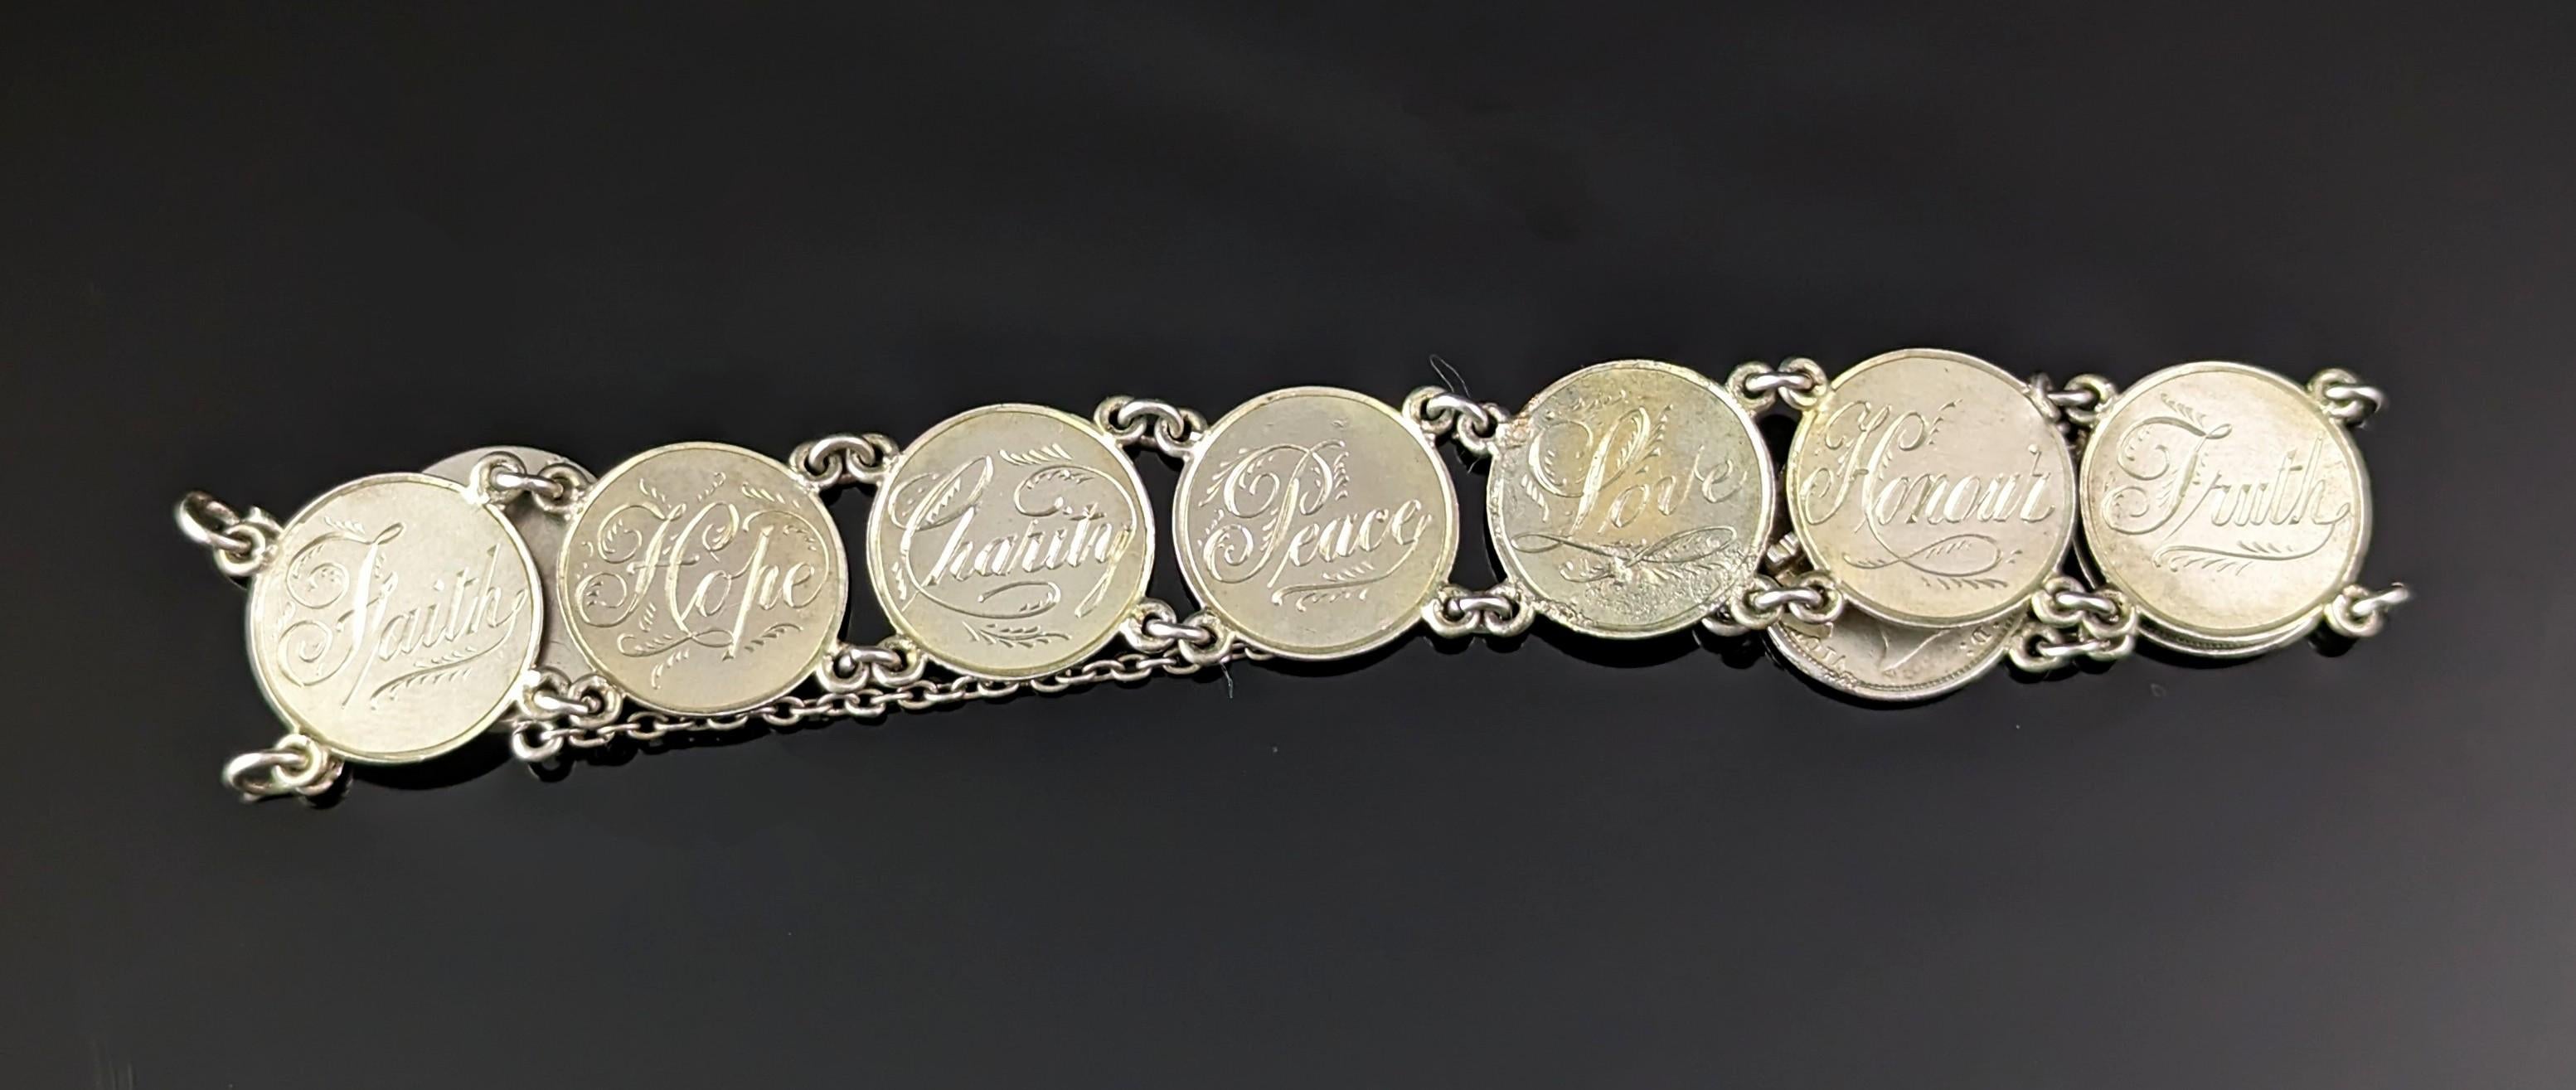 So schön und romantisch ist dieses antike original viktorianische Liebesbeweis-Armband.

Er besteht aus einer Reihe viktorianischer Silbermünzen, die auf einer Seite geglättet und mit verschiedenen Liebesbotschaften graviert sind.

Auf den Münzen